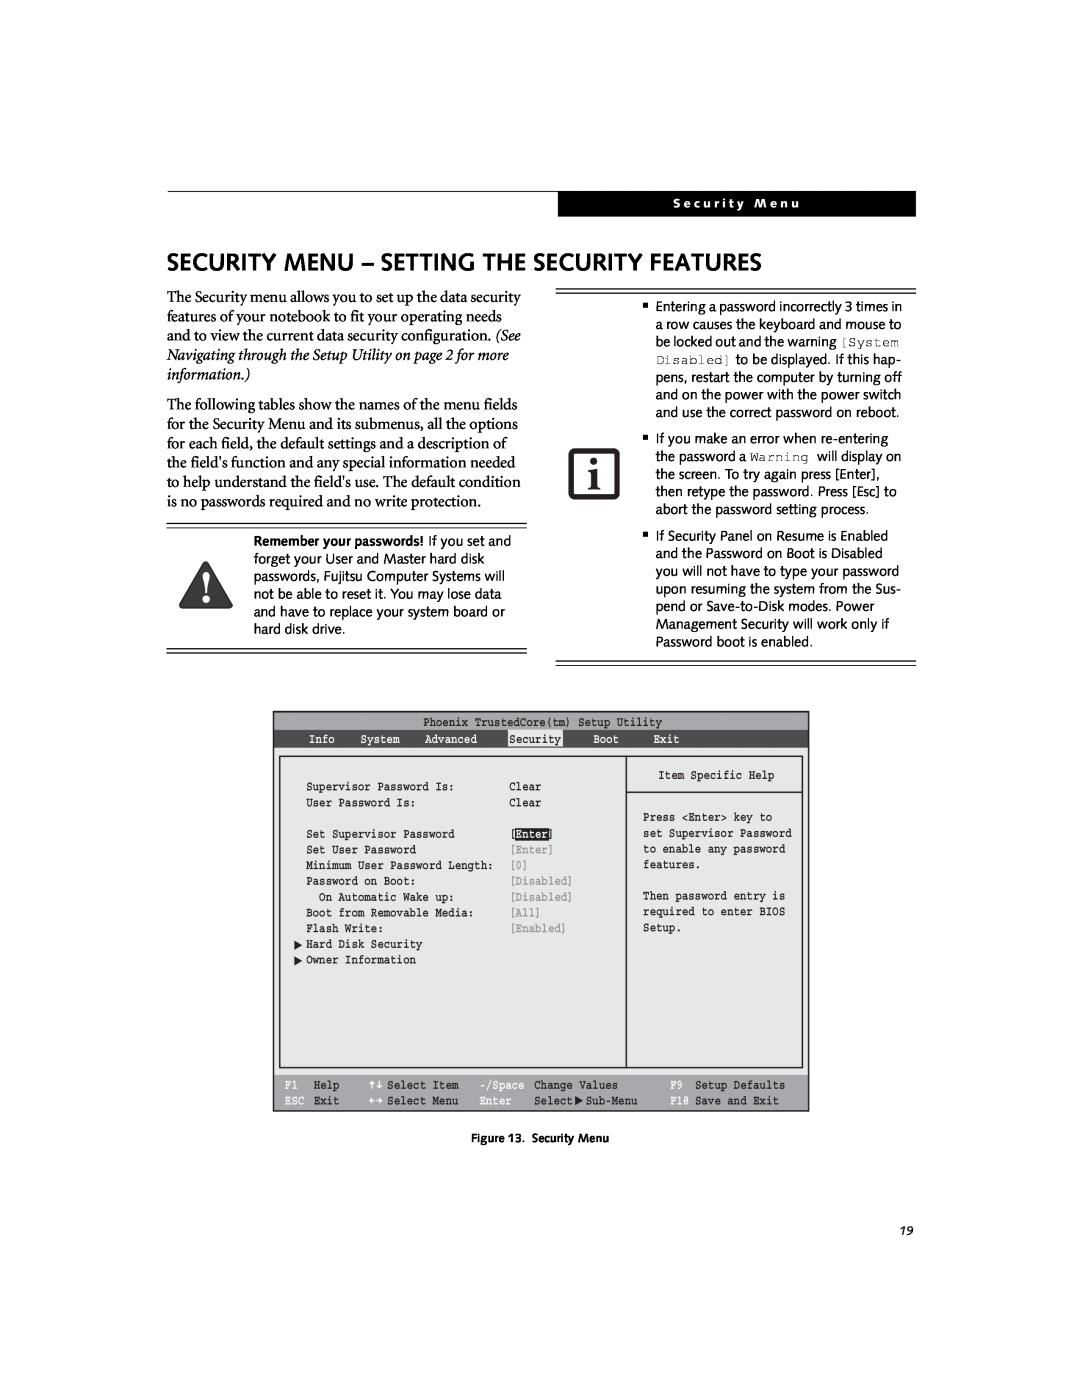 Fujitsu V700, V1020 manual Security Menu - Setting The Security Features 